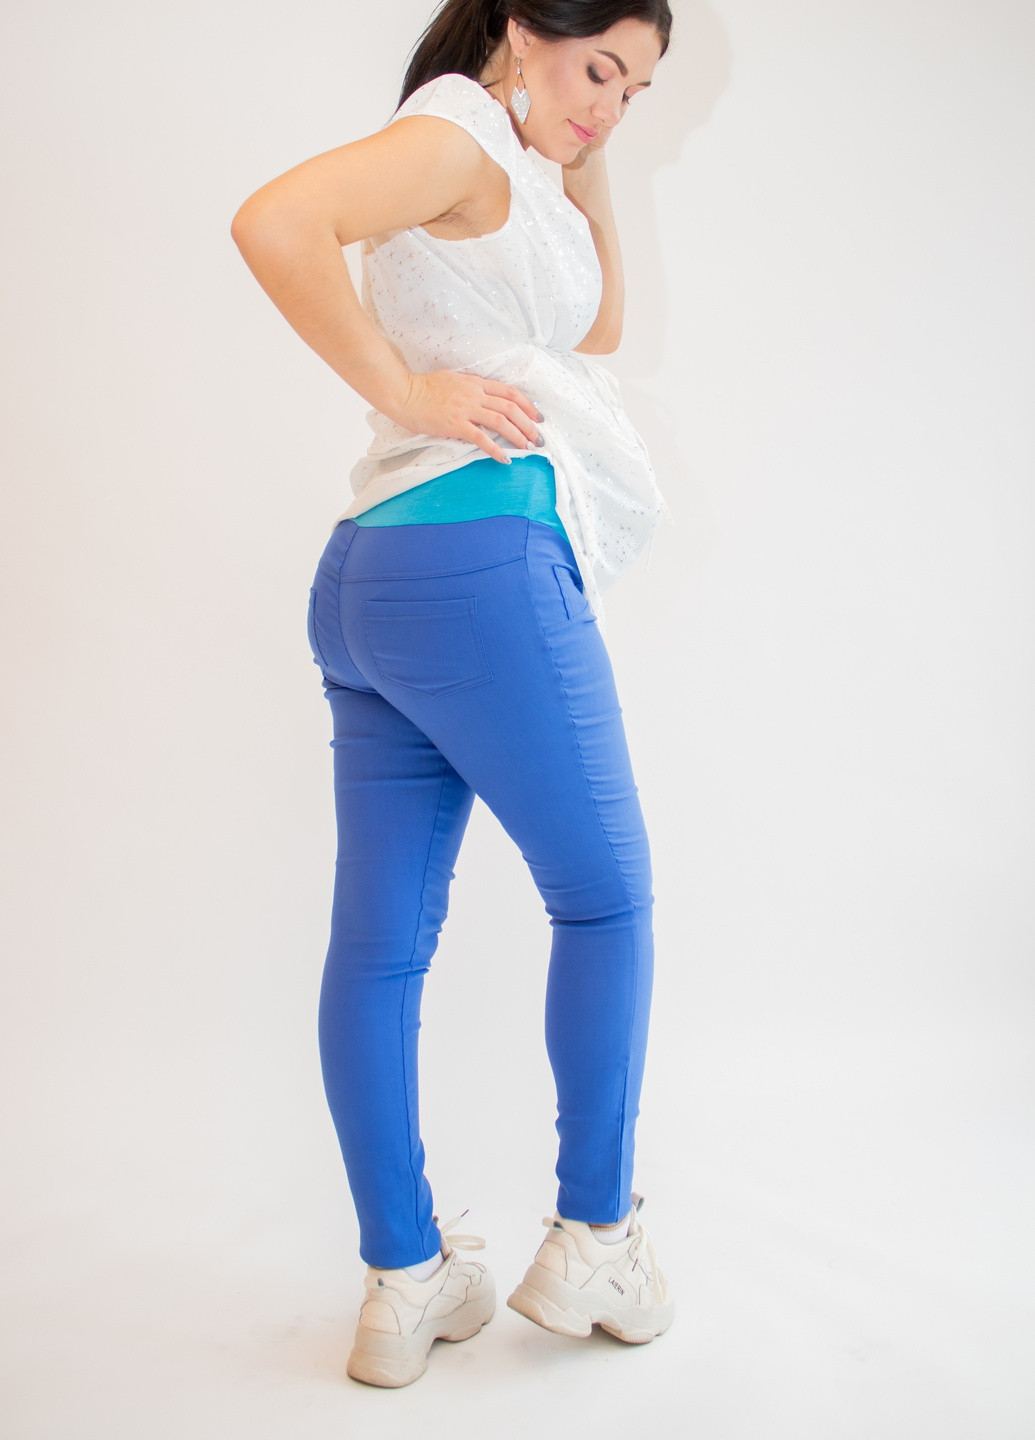 Голубые летние джеггинсы джинсы для беременных premom s голубые (42-44) Makosh.top